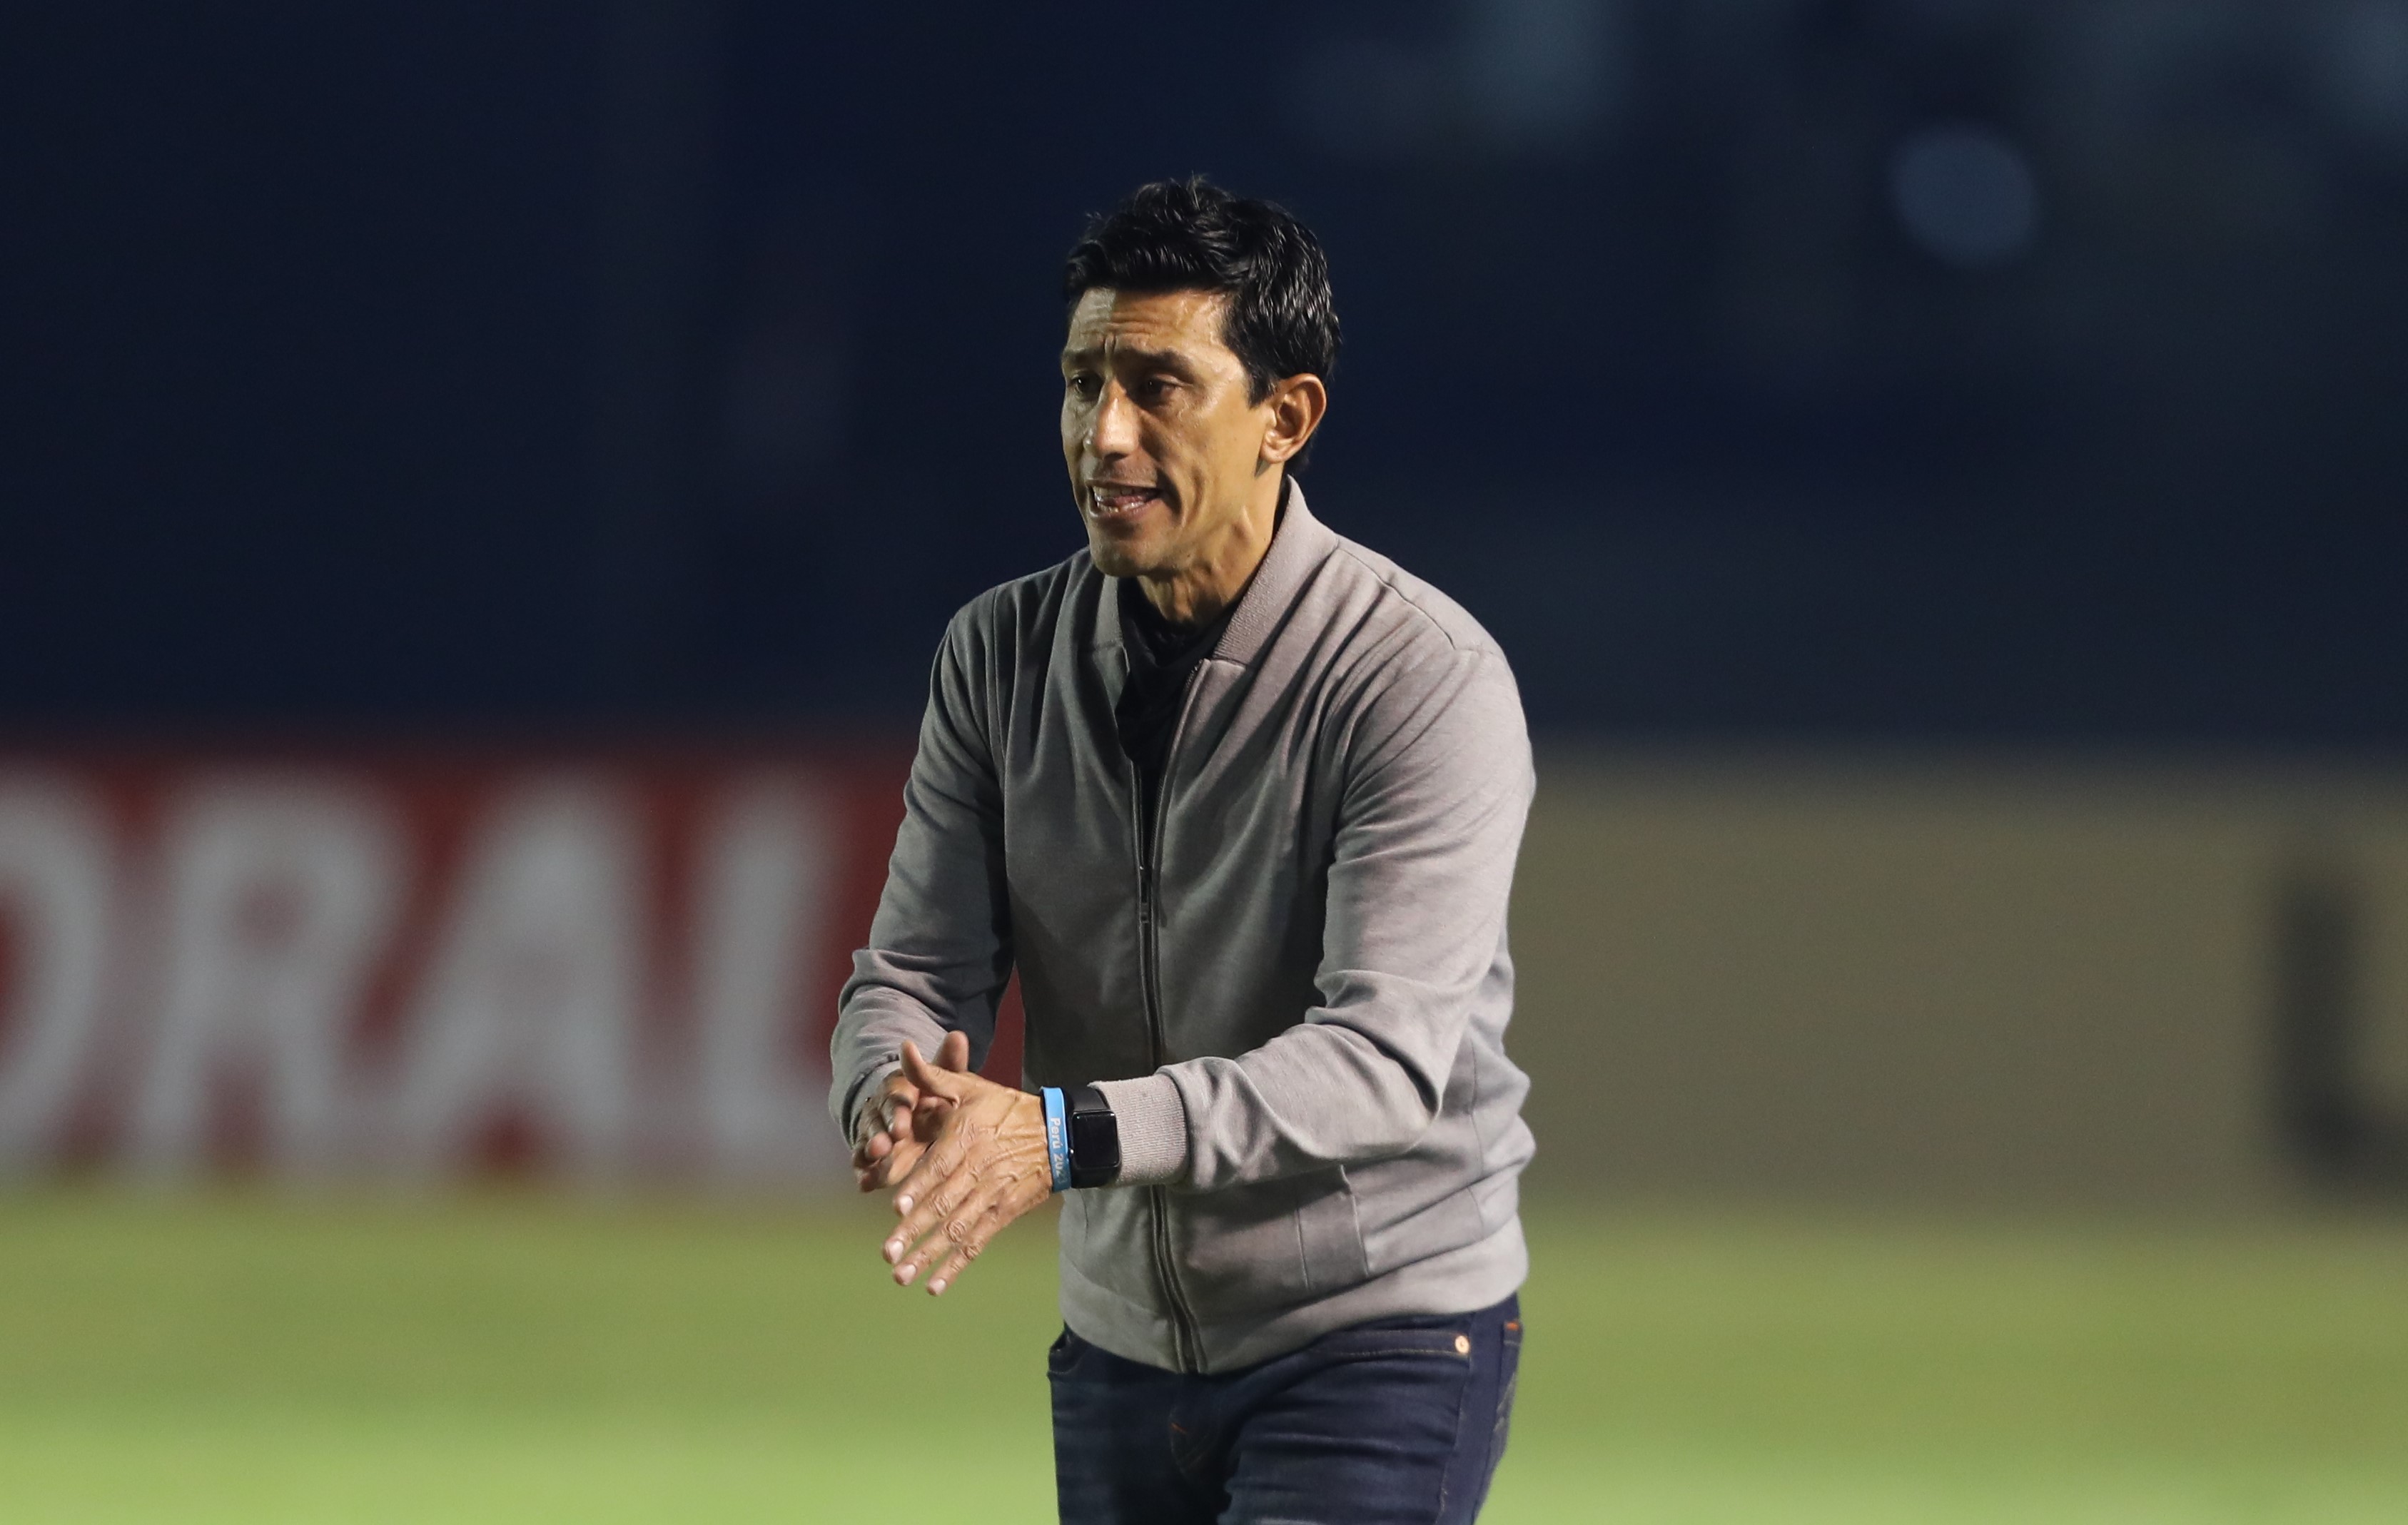 El entrenador mexicano destacó la entrega de sus jugadores en el juego ante Estados Unidos. (Foto Prensa Libre: Douglas Suruy Franco)